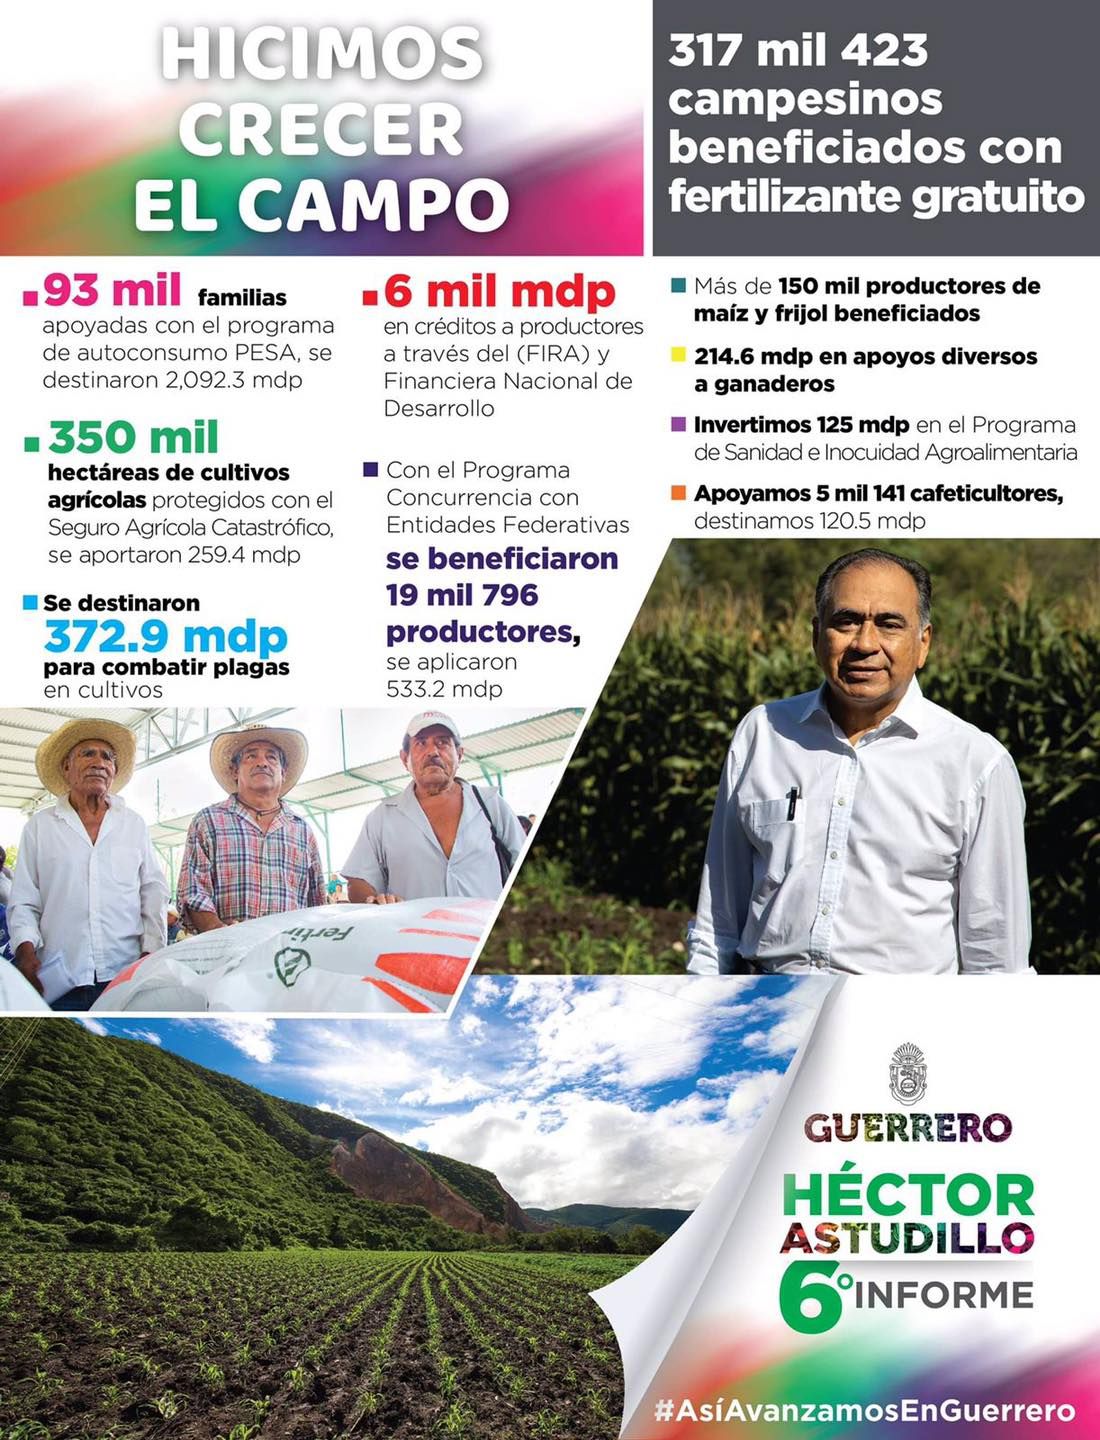  Gobierno de Héctor Astudillo dio seis años de crecimiento para el campo 